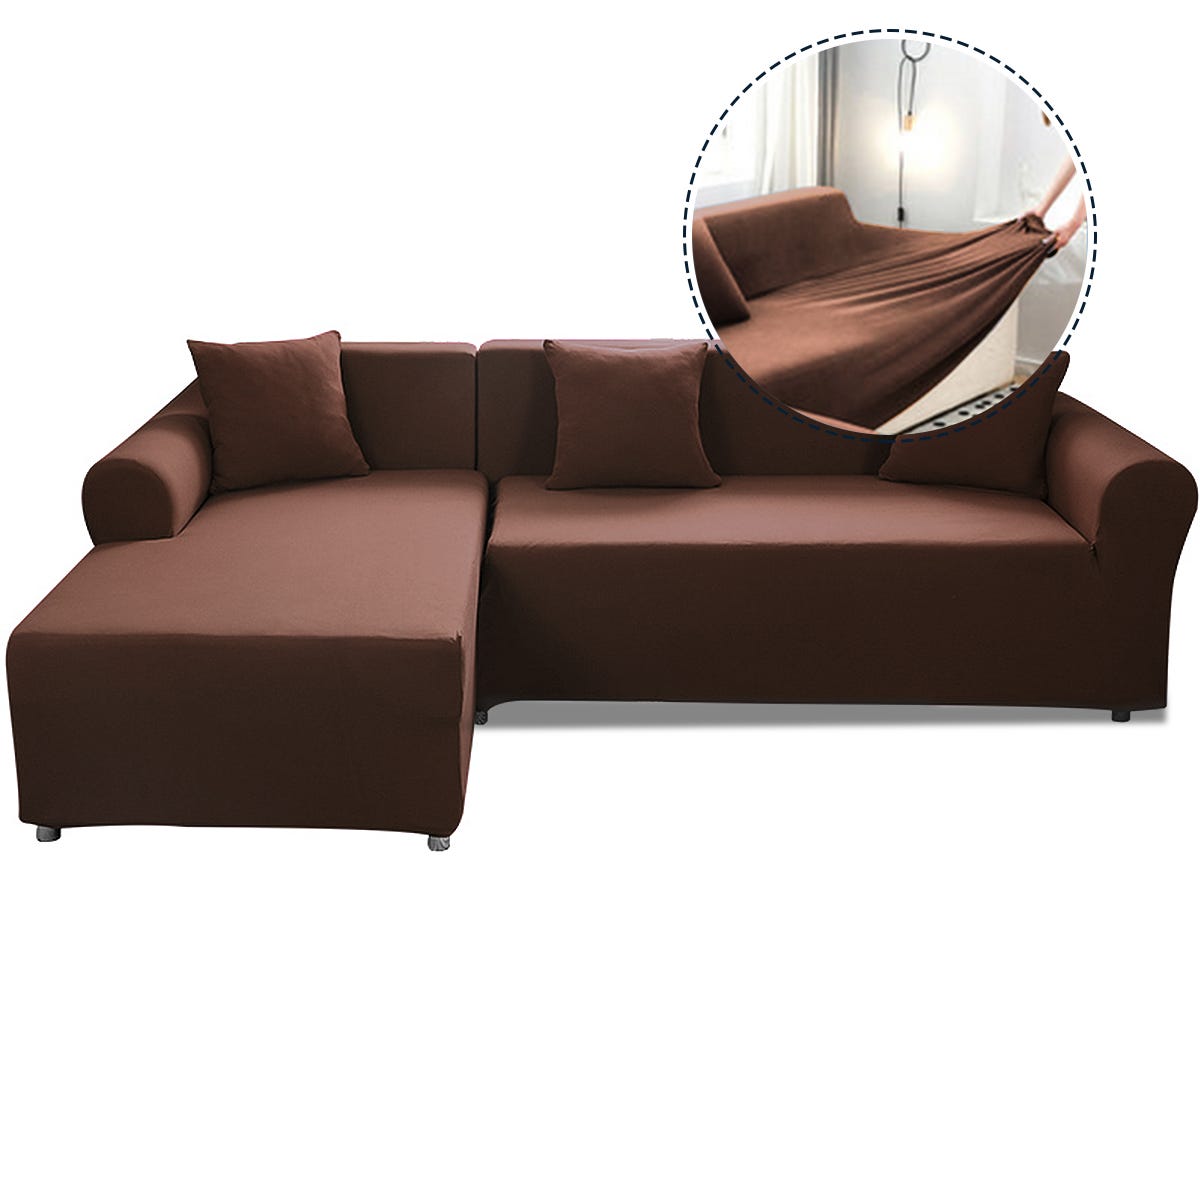 Housse de protection meuble canapé et 2 coussin polyester café